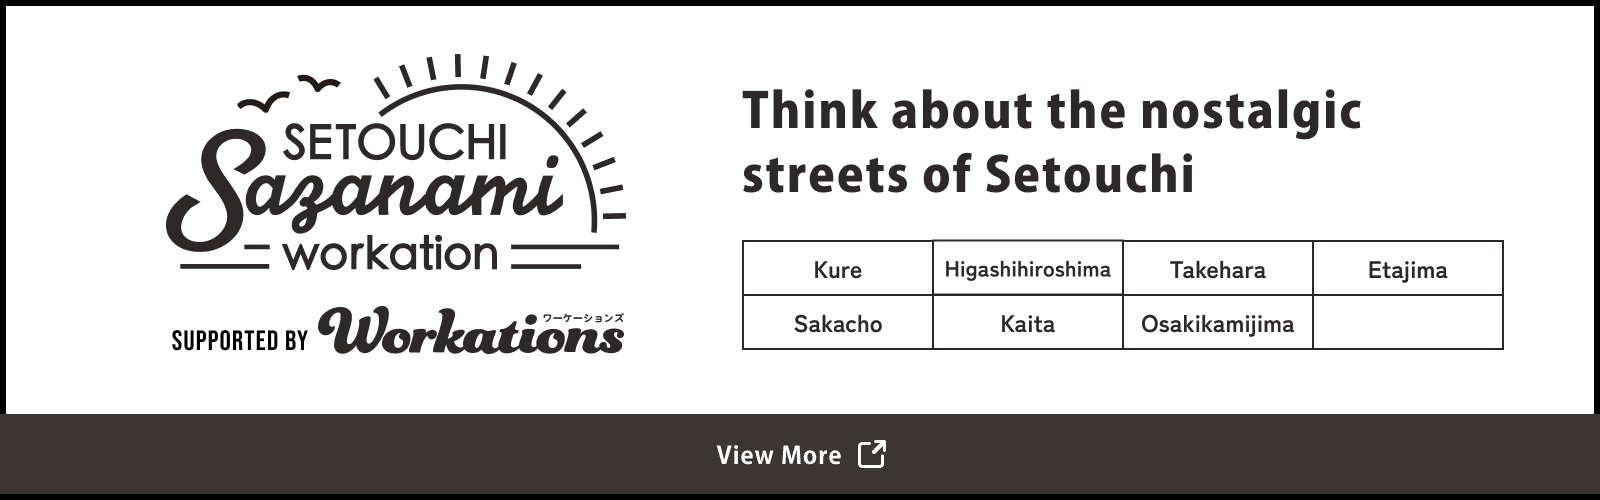 瀬戸内のノスタルジックな街並みに思いを馳せる setouchi sazanami workation 詳しくはこちら | peeeps